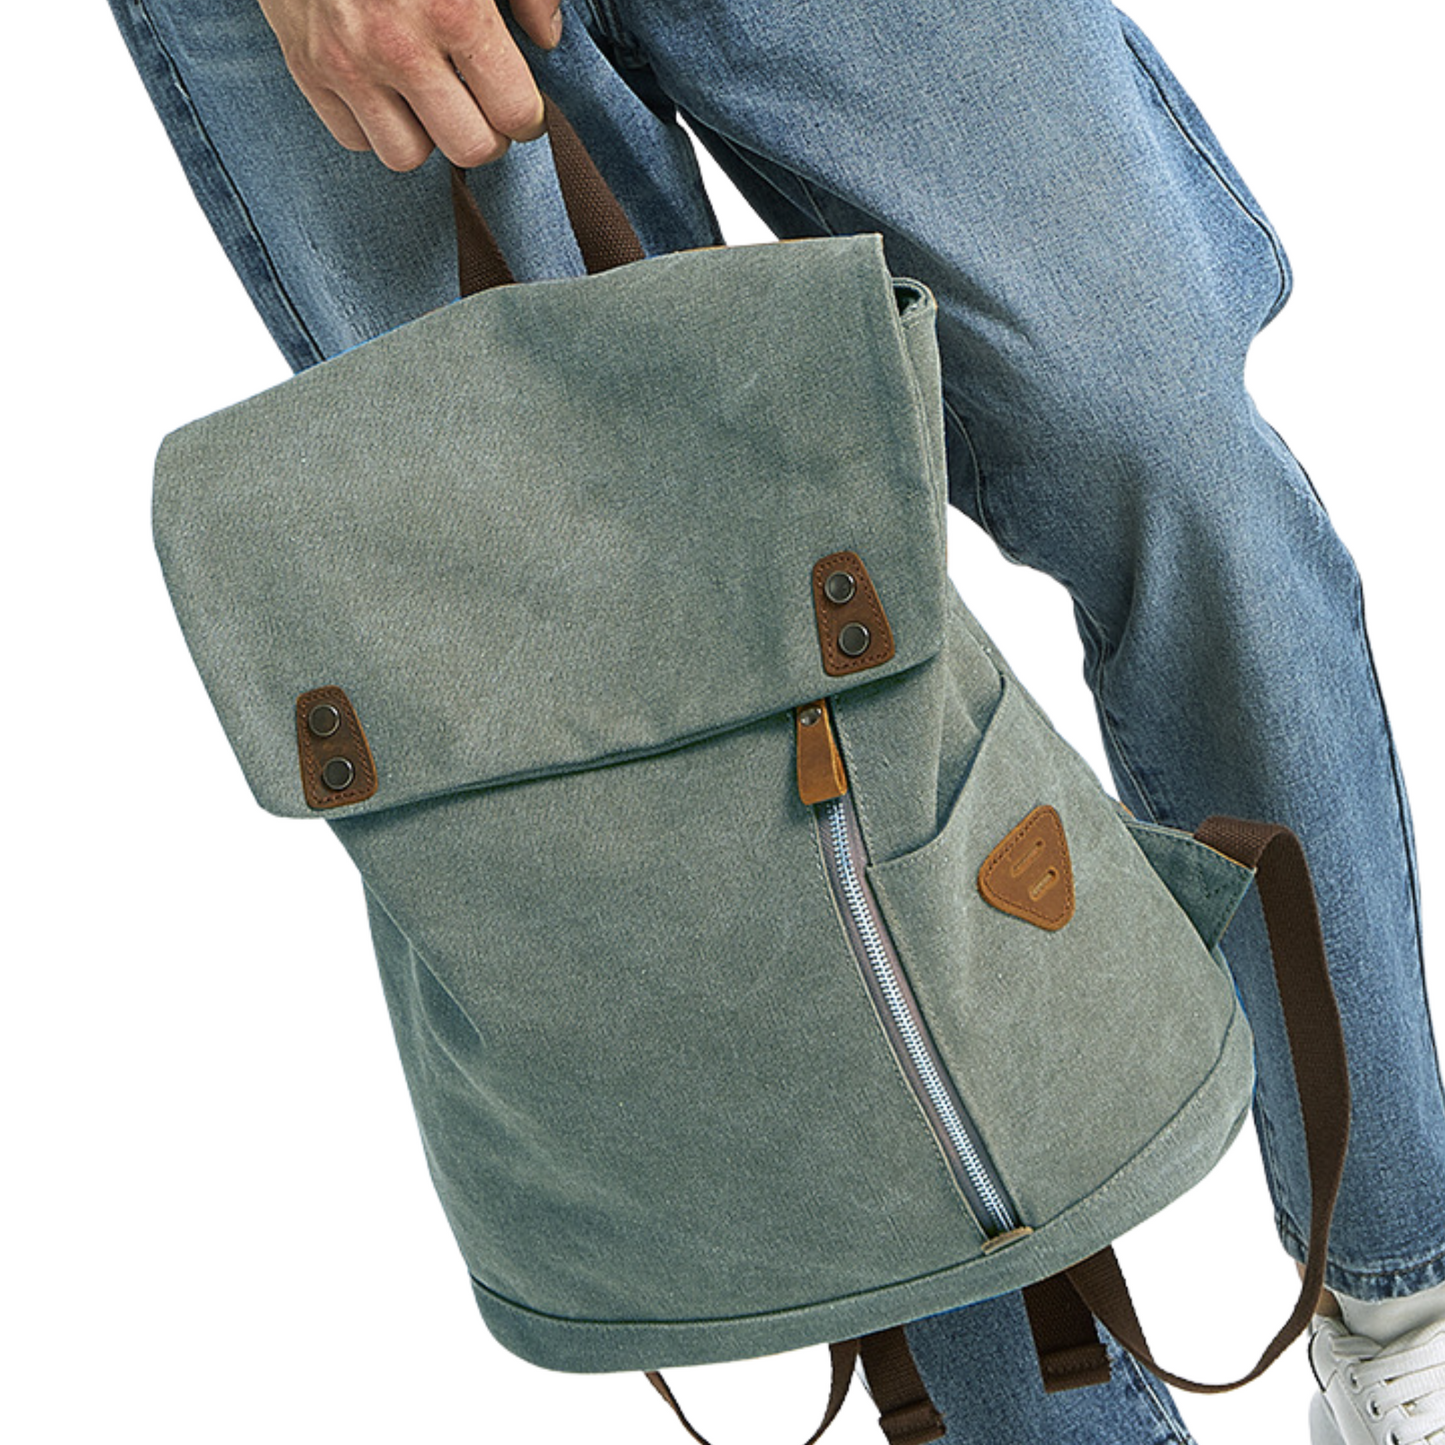 Hiking School Travel Sport Bags Large Canvas Backpack Shoulder Bag